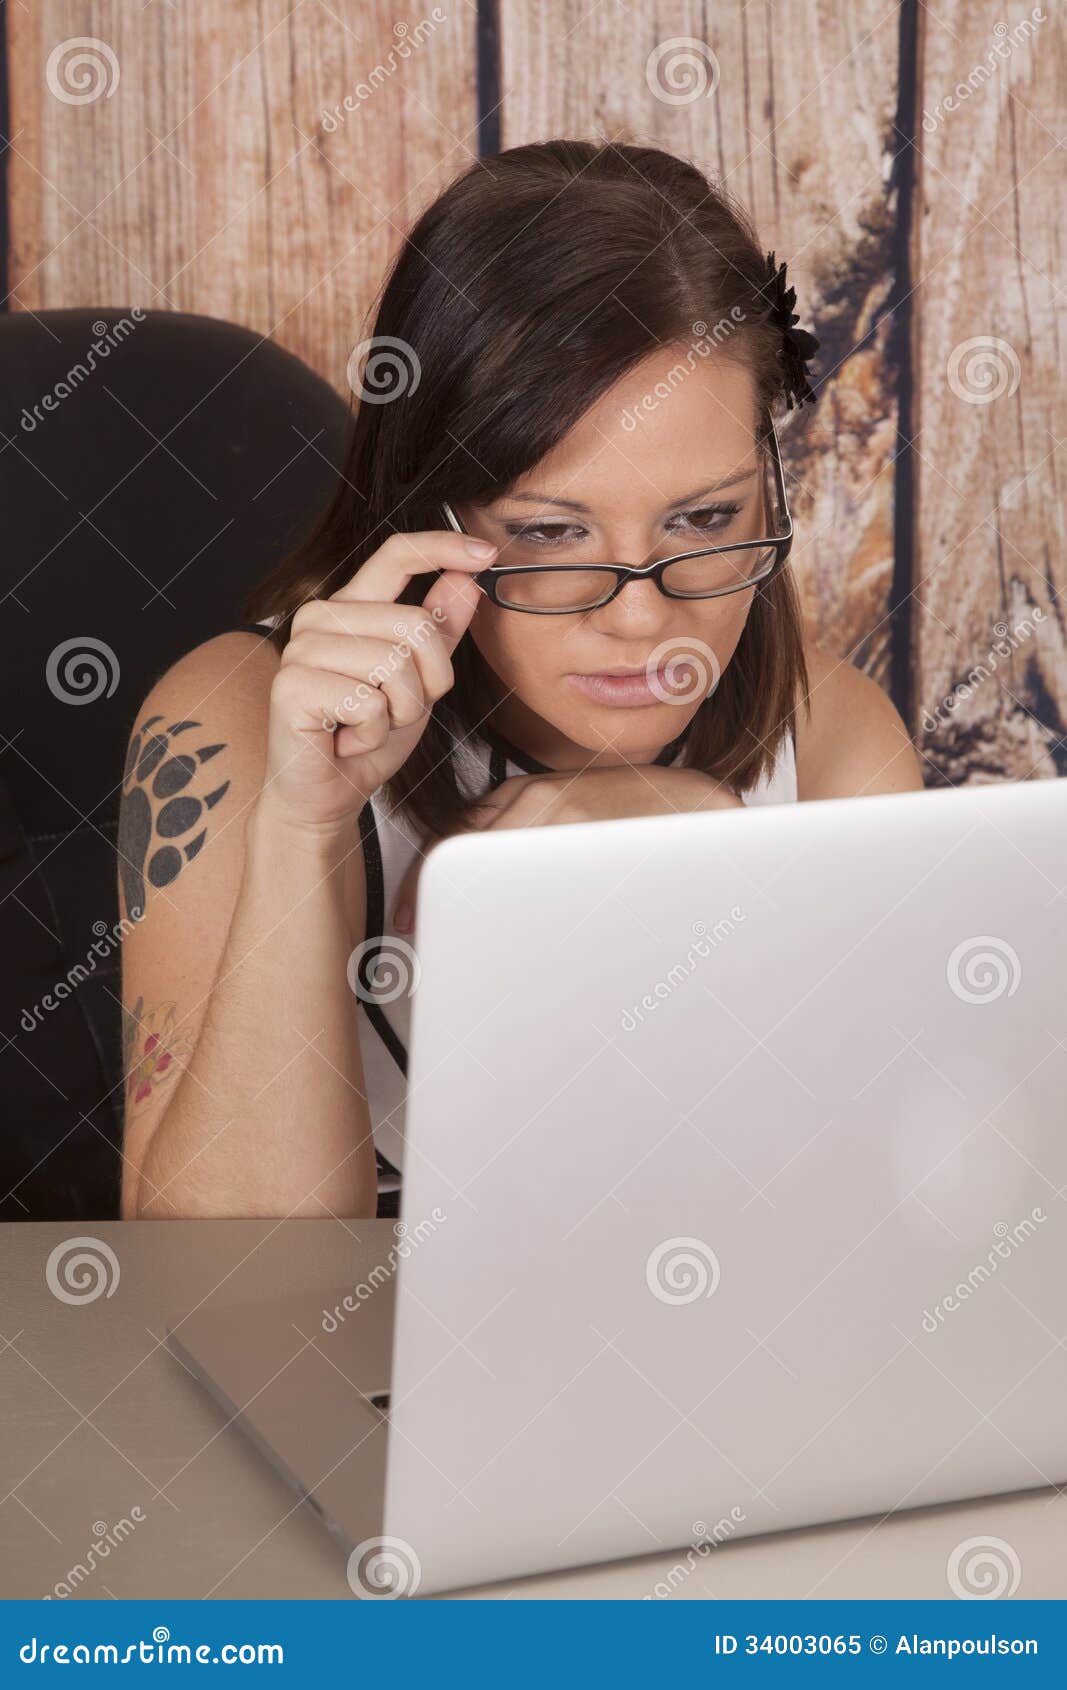 La madera blanca del ordenador del vestido de la mujer sienta el tatuaje de la garra. Una mujer que trabaja en su ordenador que estudia mirando su ordenador